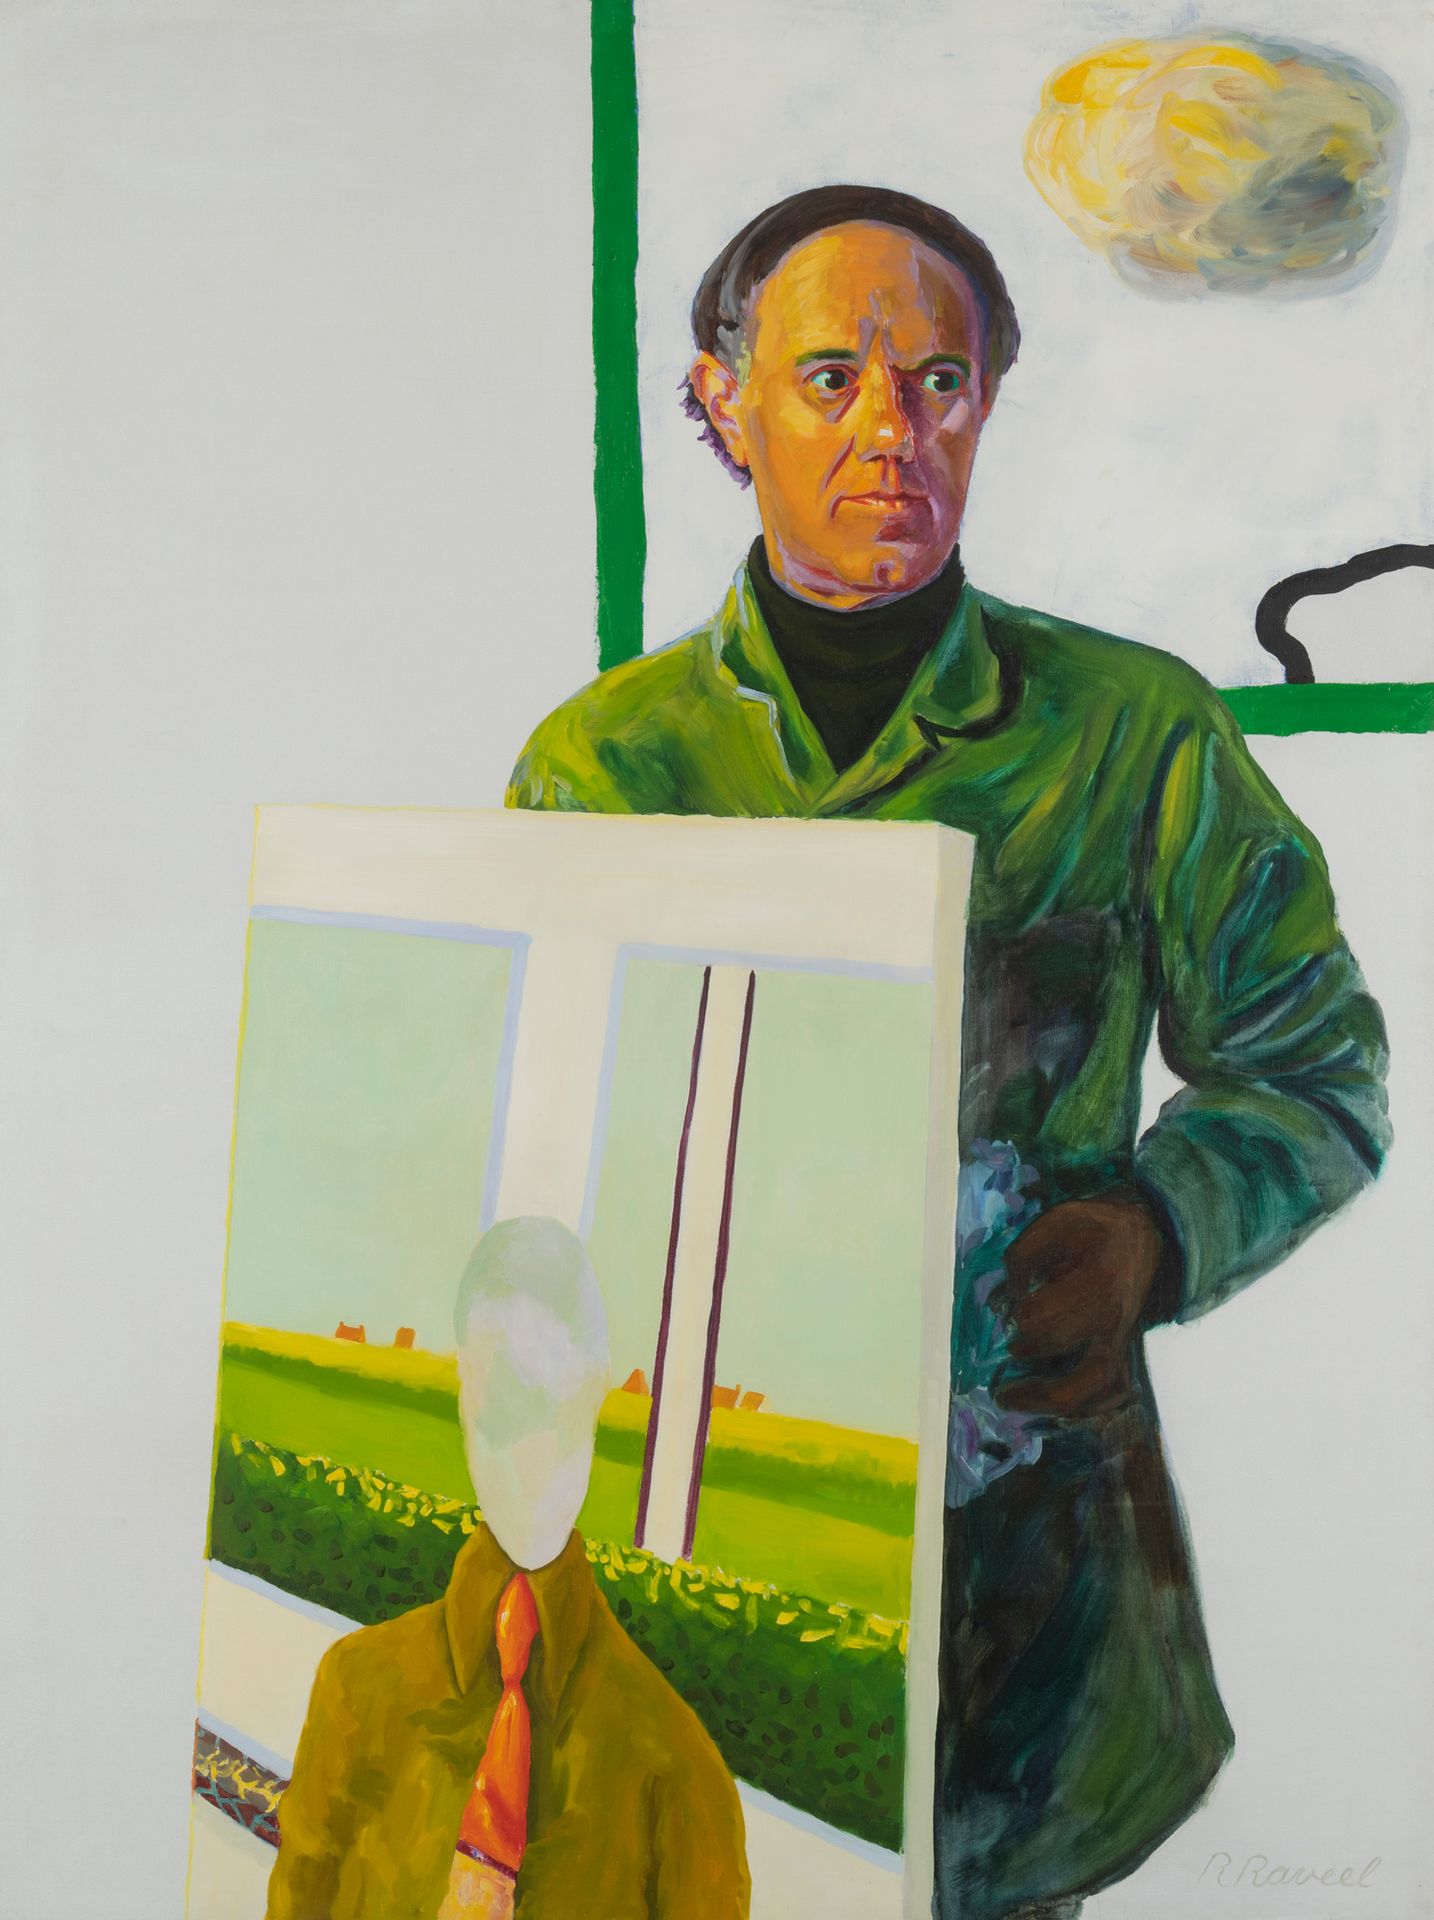 ROGER RAVEEL (1921-2013) Zelfportret met schilderij, 1974
Óleo sobre lienzo.
Fir&hellip;